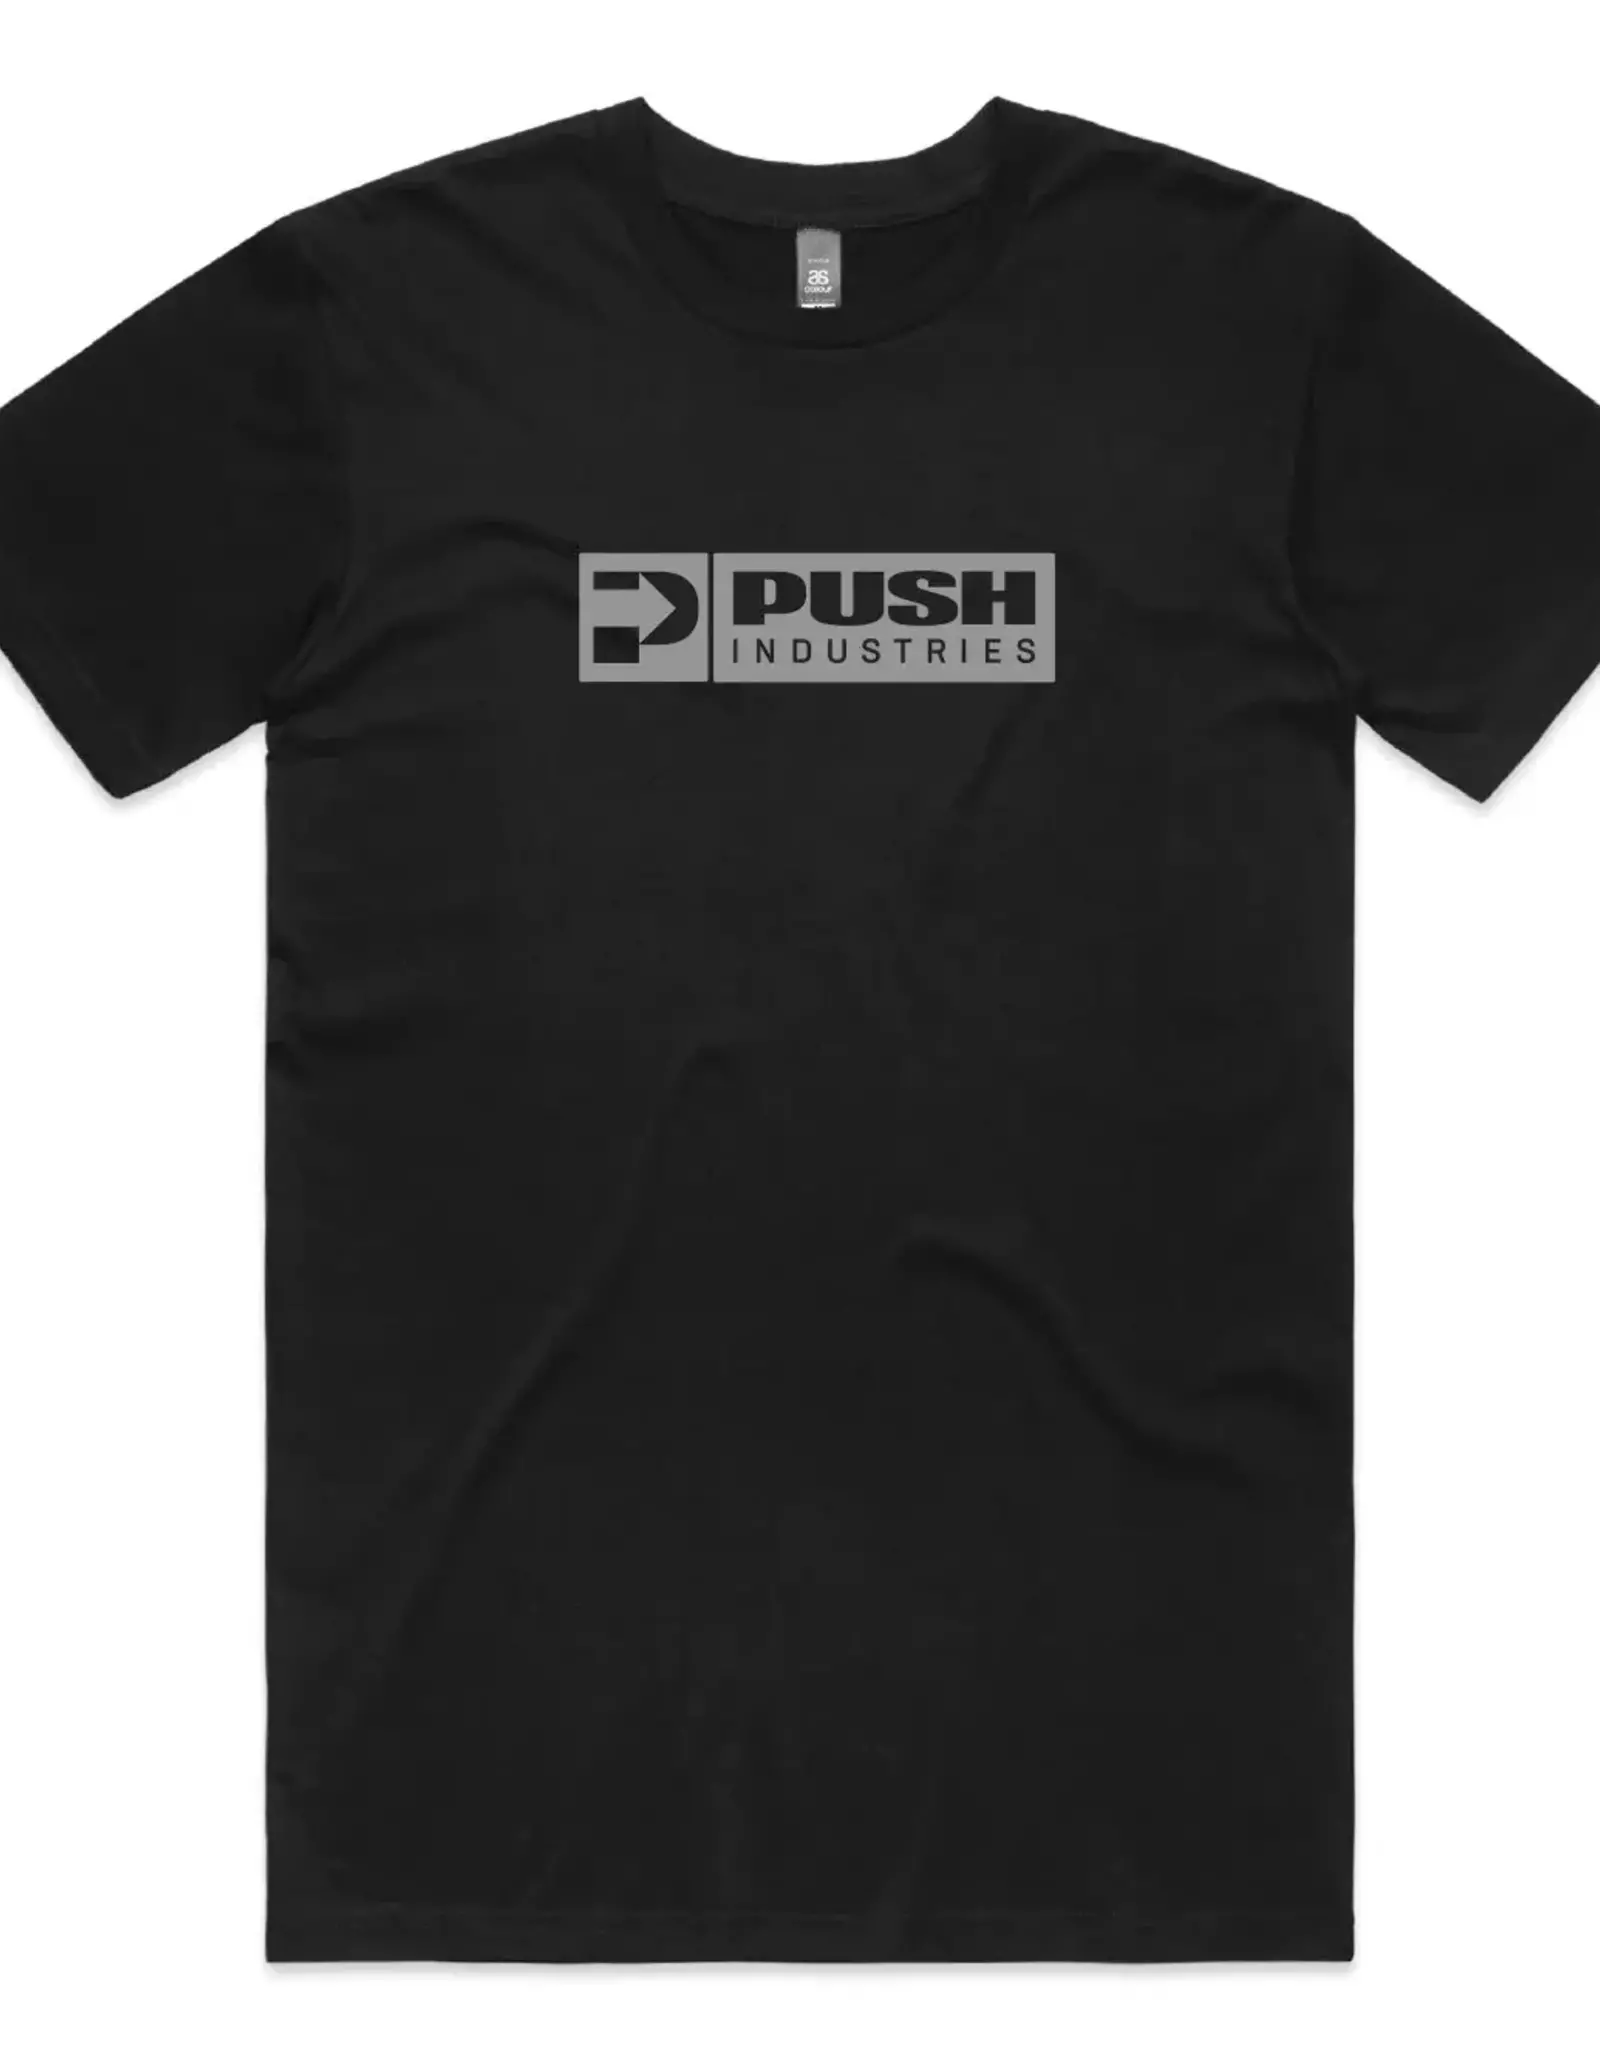 PUSH PUSH-LOGO TEE (L)